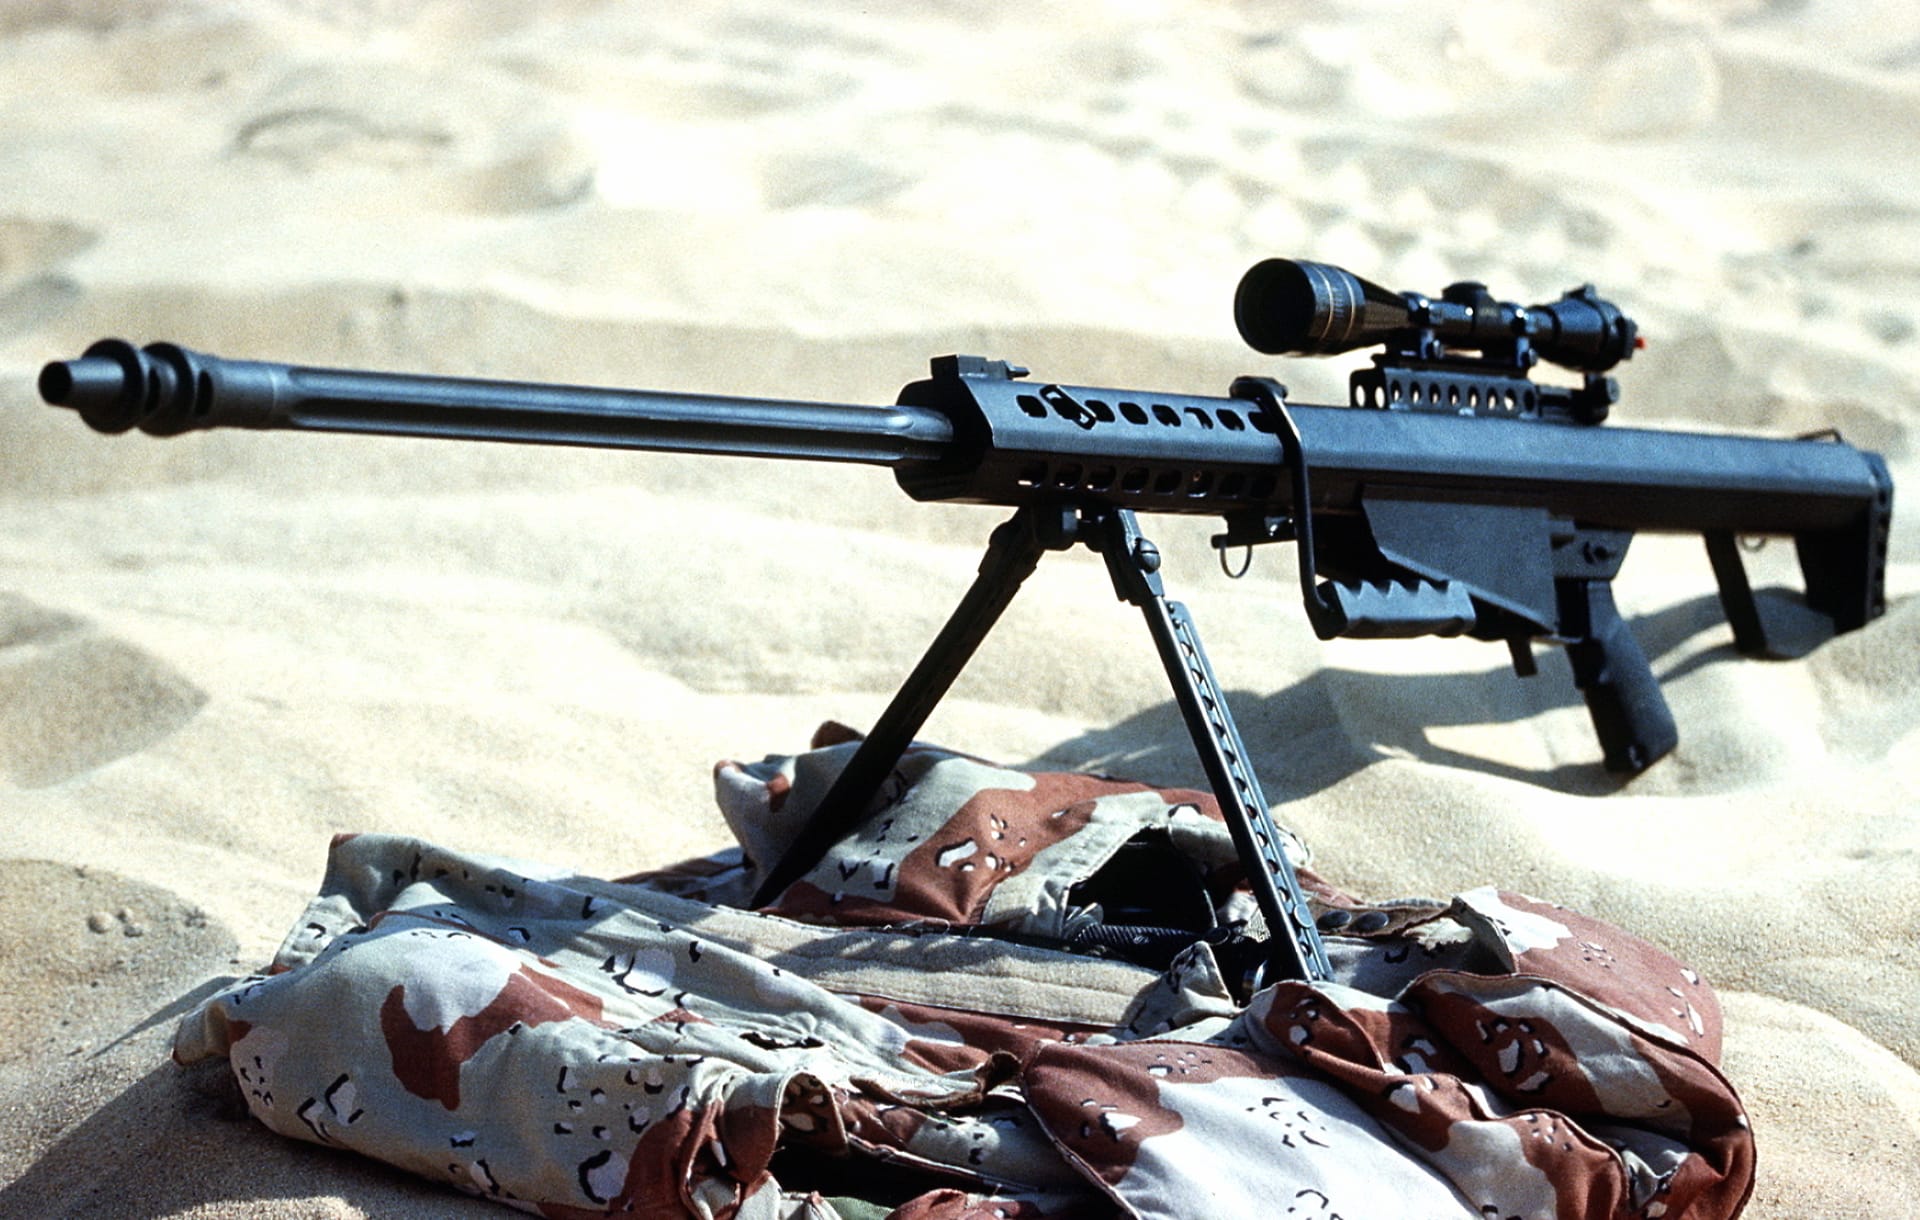 Barrett M82 Sniper Rifle at 1024 x 768 size wallpapers HD quality